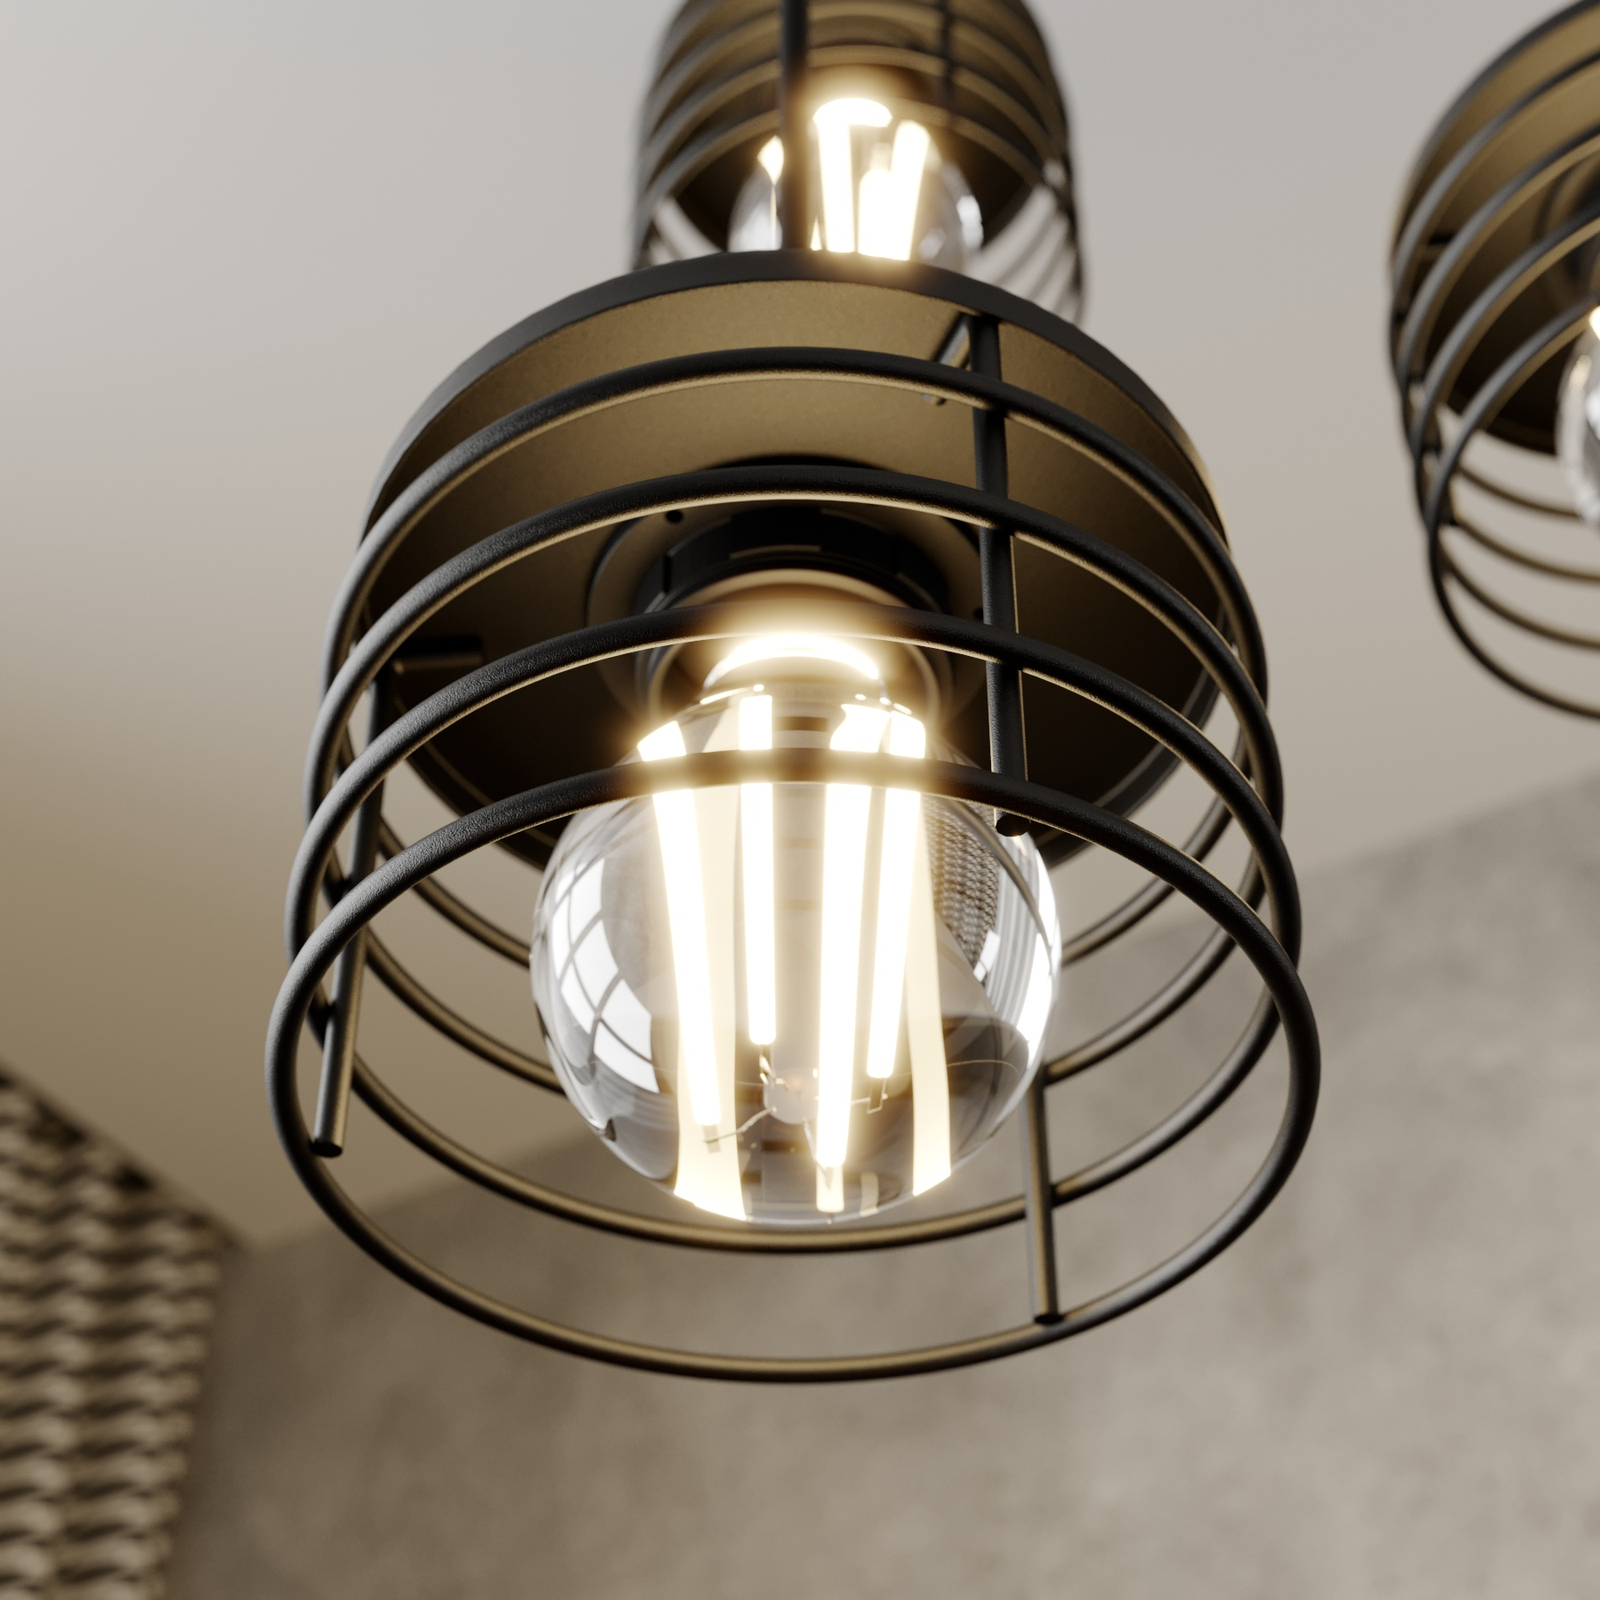 Vrijgevig merknaam Verlengen Hanglamp Edison in zwart/koper, 3-lamps rond | Lampen24.be